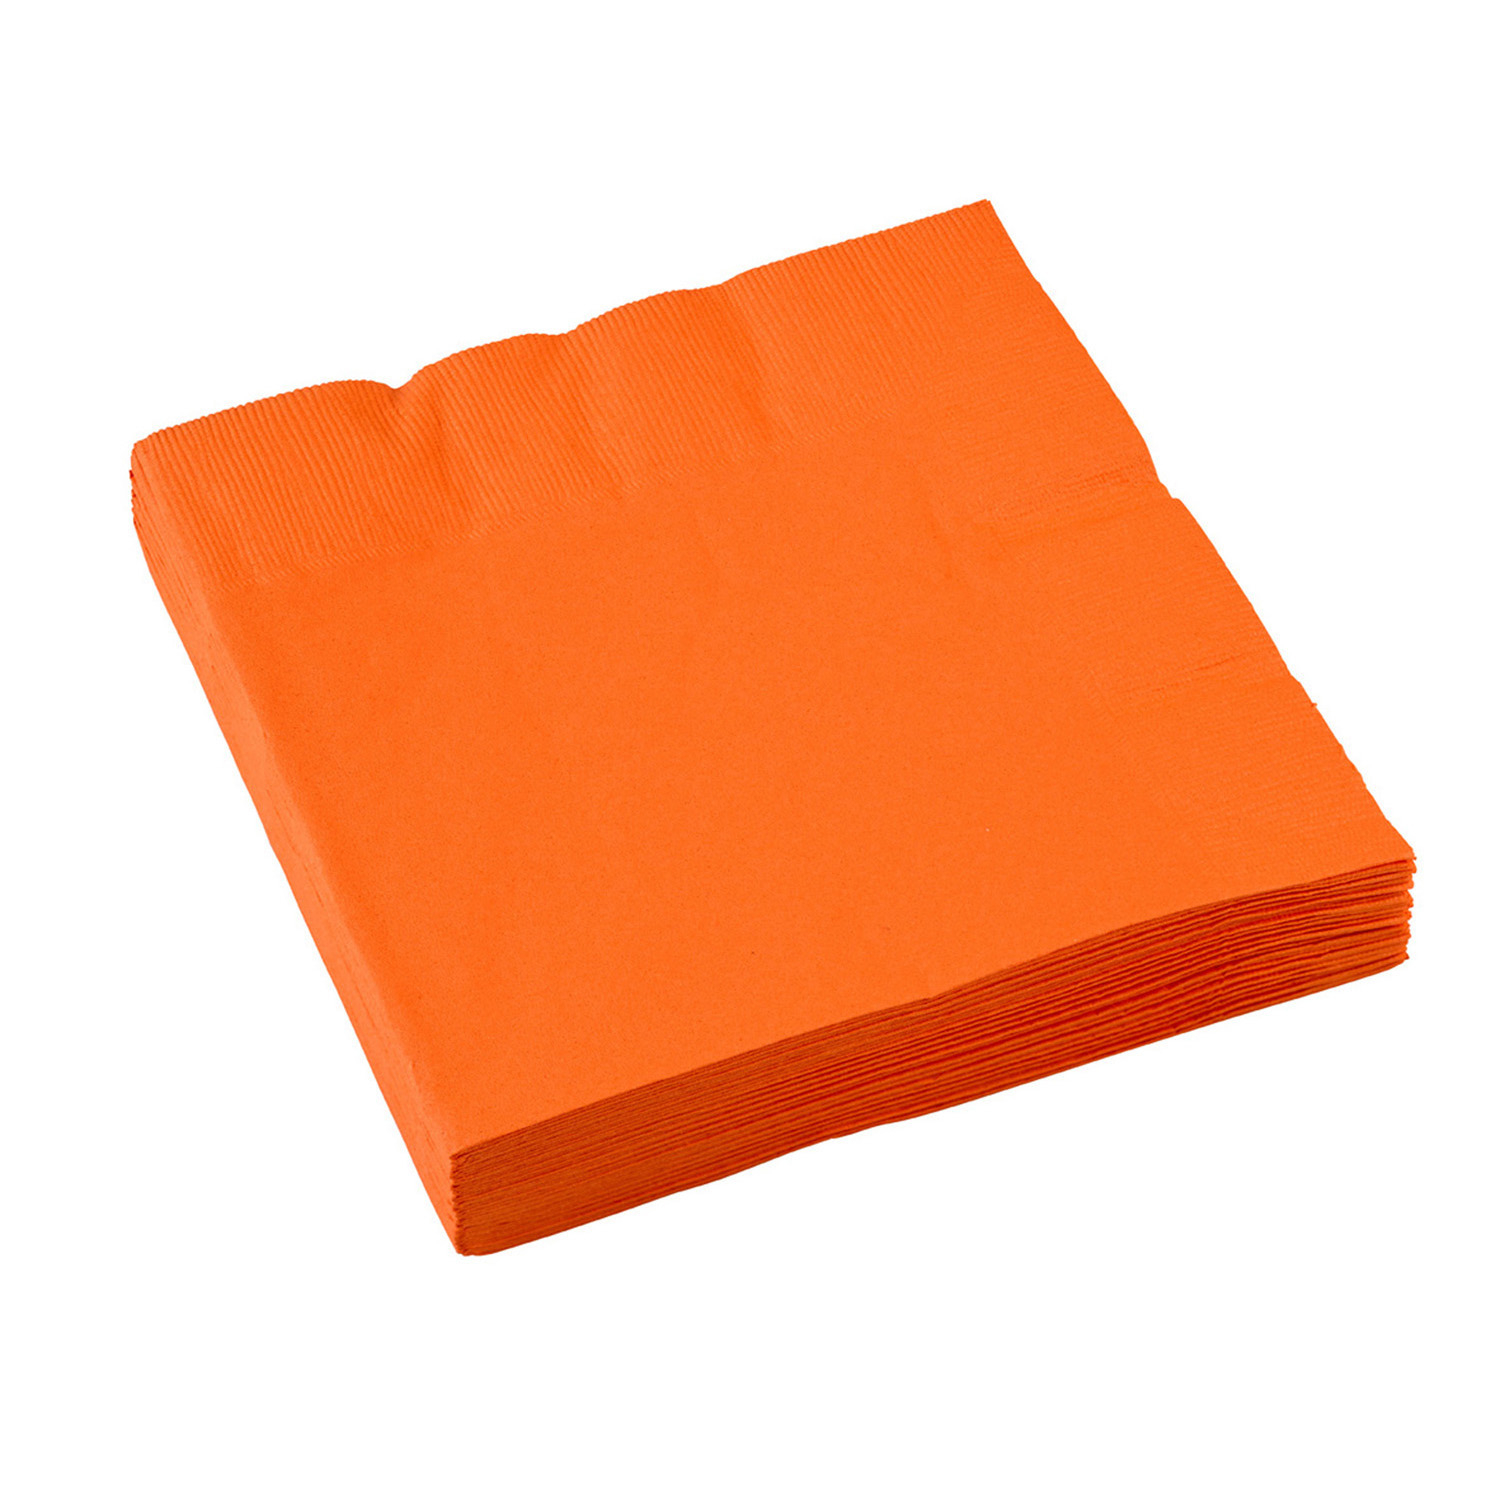 Ubrousky oranžové 20 ks 33 cm x 33 cm 2-vrstvé 